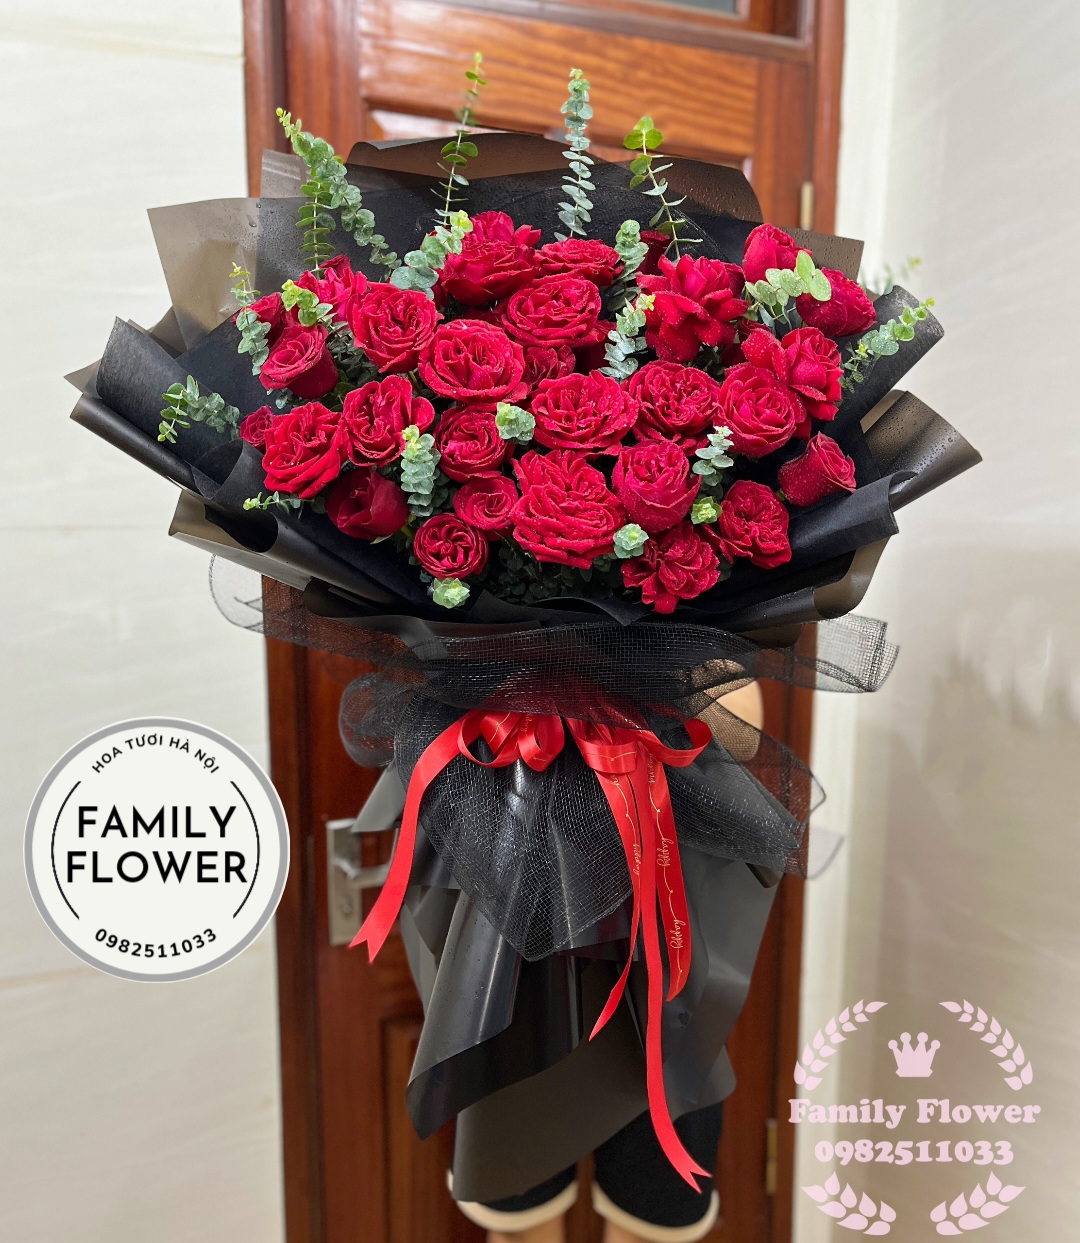 Bó hoa hồng đỏ tặng người yêu nhân dịp 20 tháng 10 ! Hoa tặng ngày phụ nữ Việt Nam 20 -10, hoa tươi Hà Nội